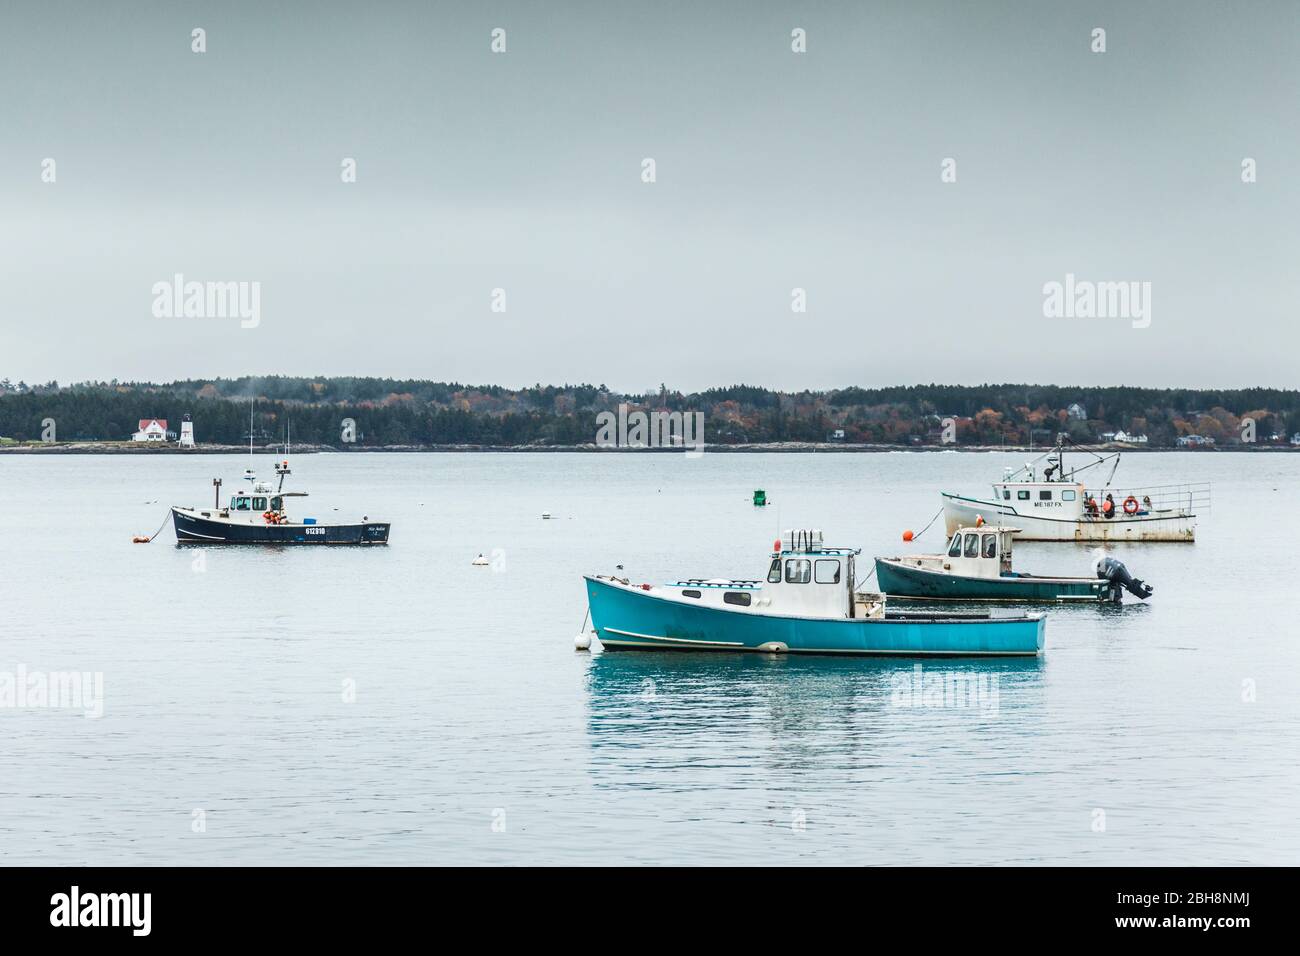 États-Unis, Maine, cinq îles, bateaux de pêche Banque D'Images